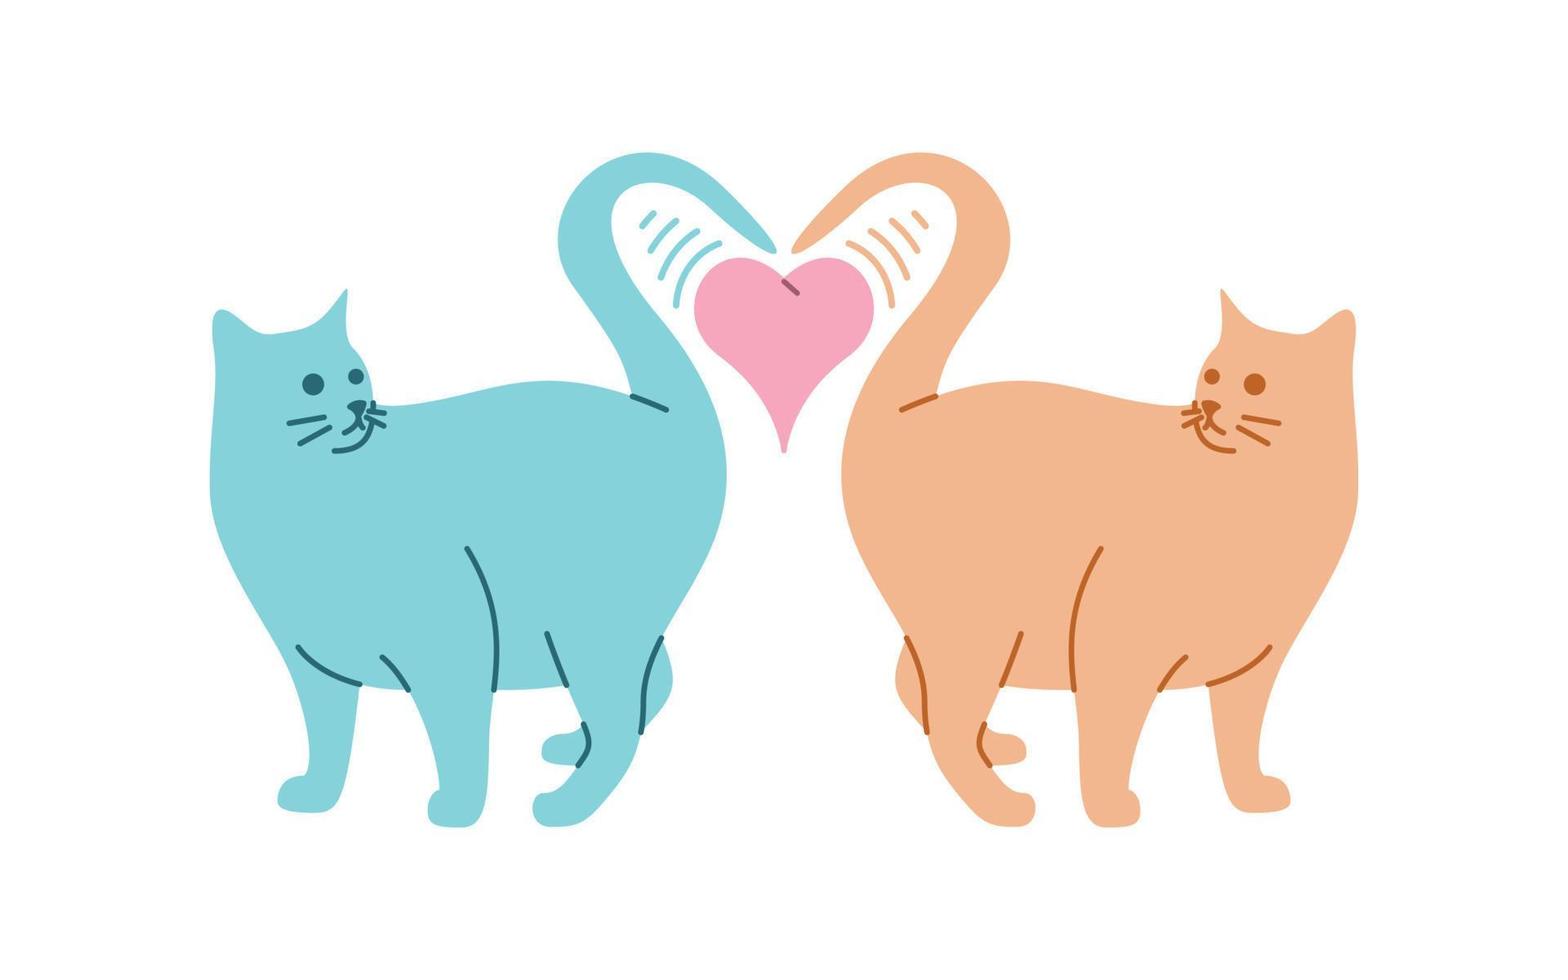 dos gatos se enamoran del diseño vectorial, gatos encantadores diseñados en un estilo colorido y divertido vector